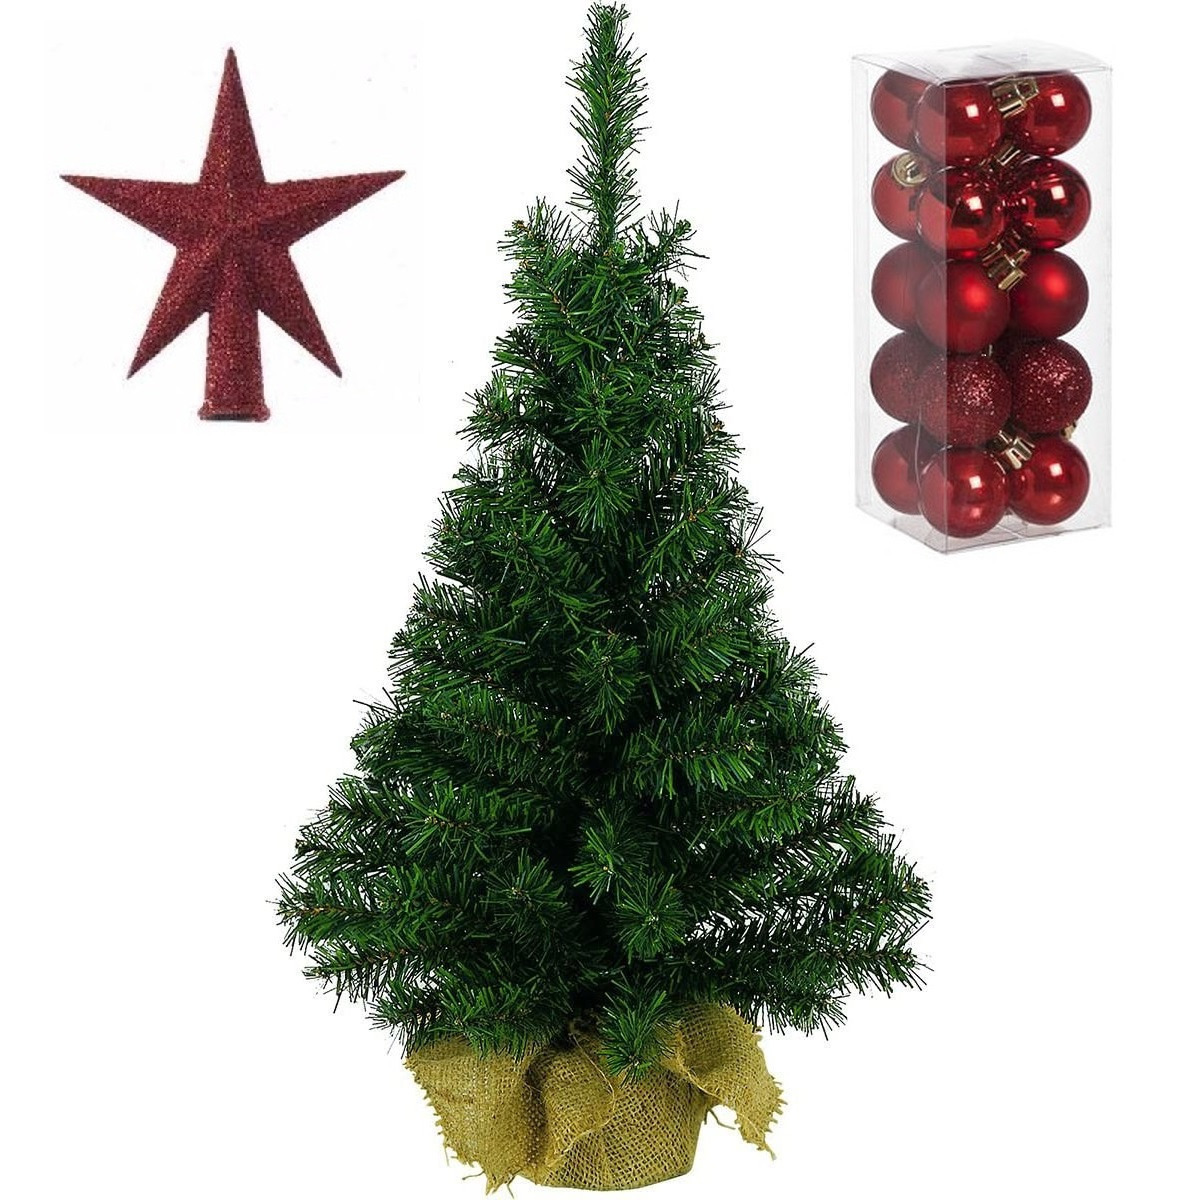 Volle kunst kerstboom 35 cm in jute zak inclusief rode versiering 21-delig